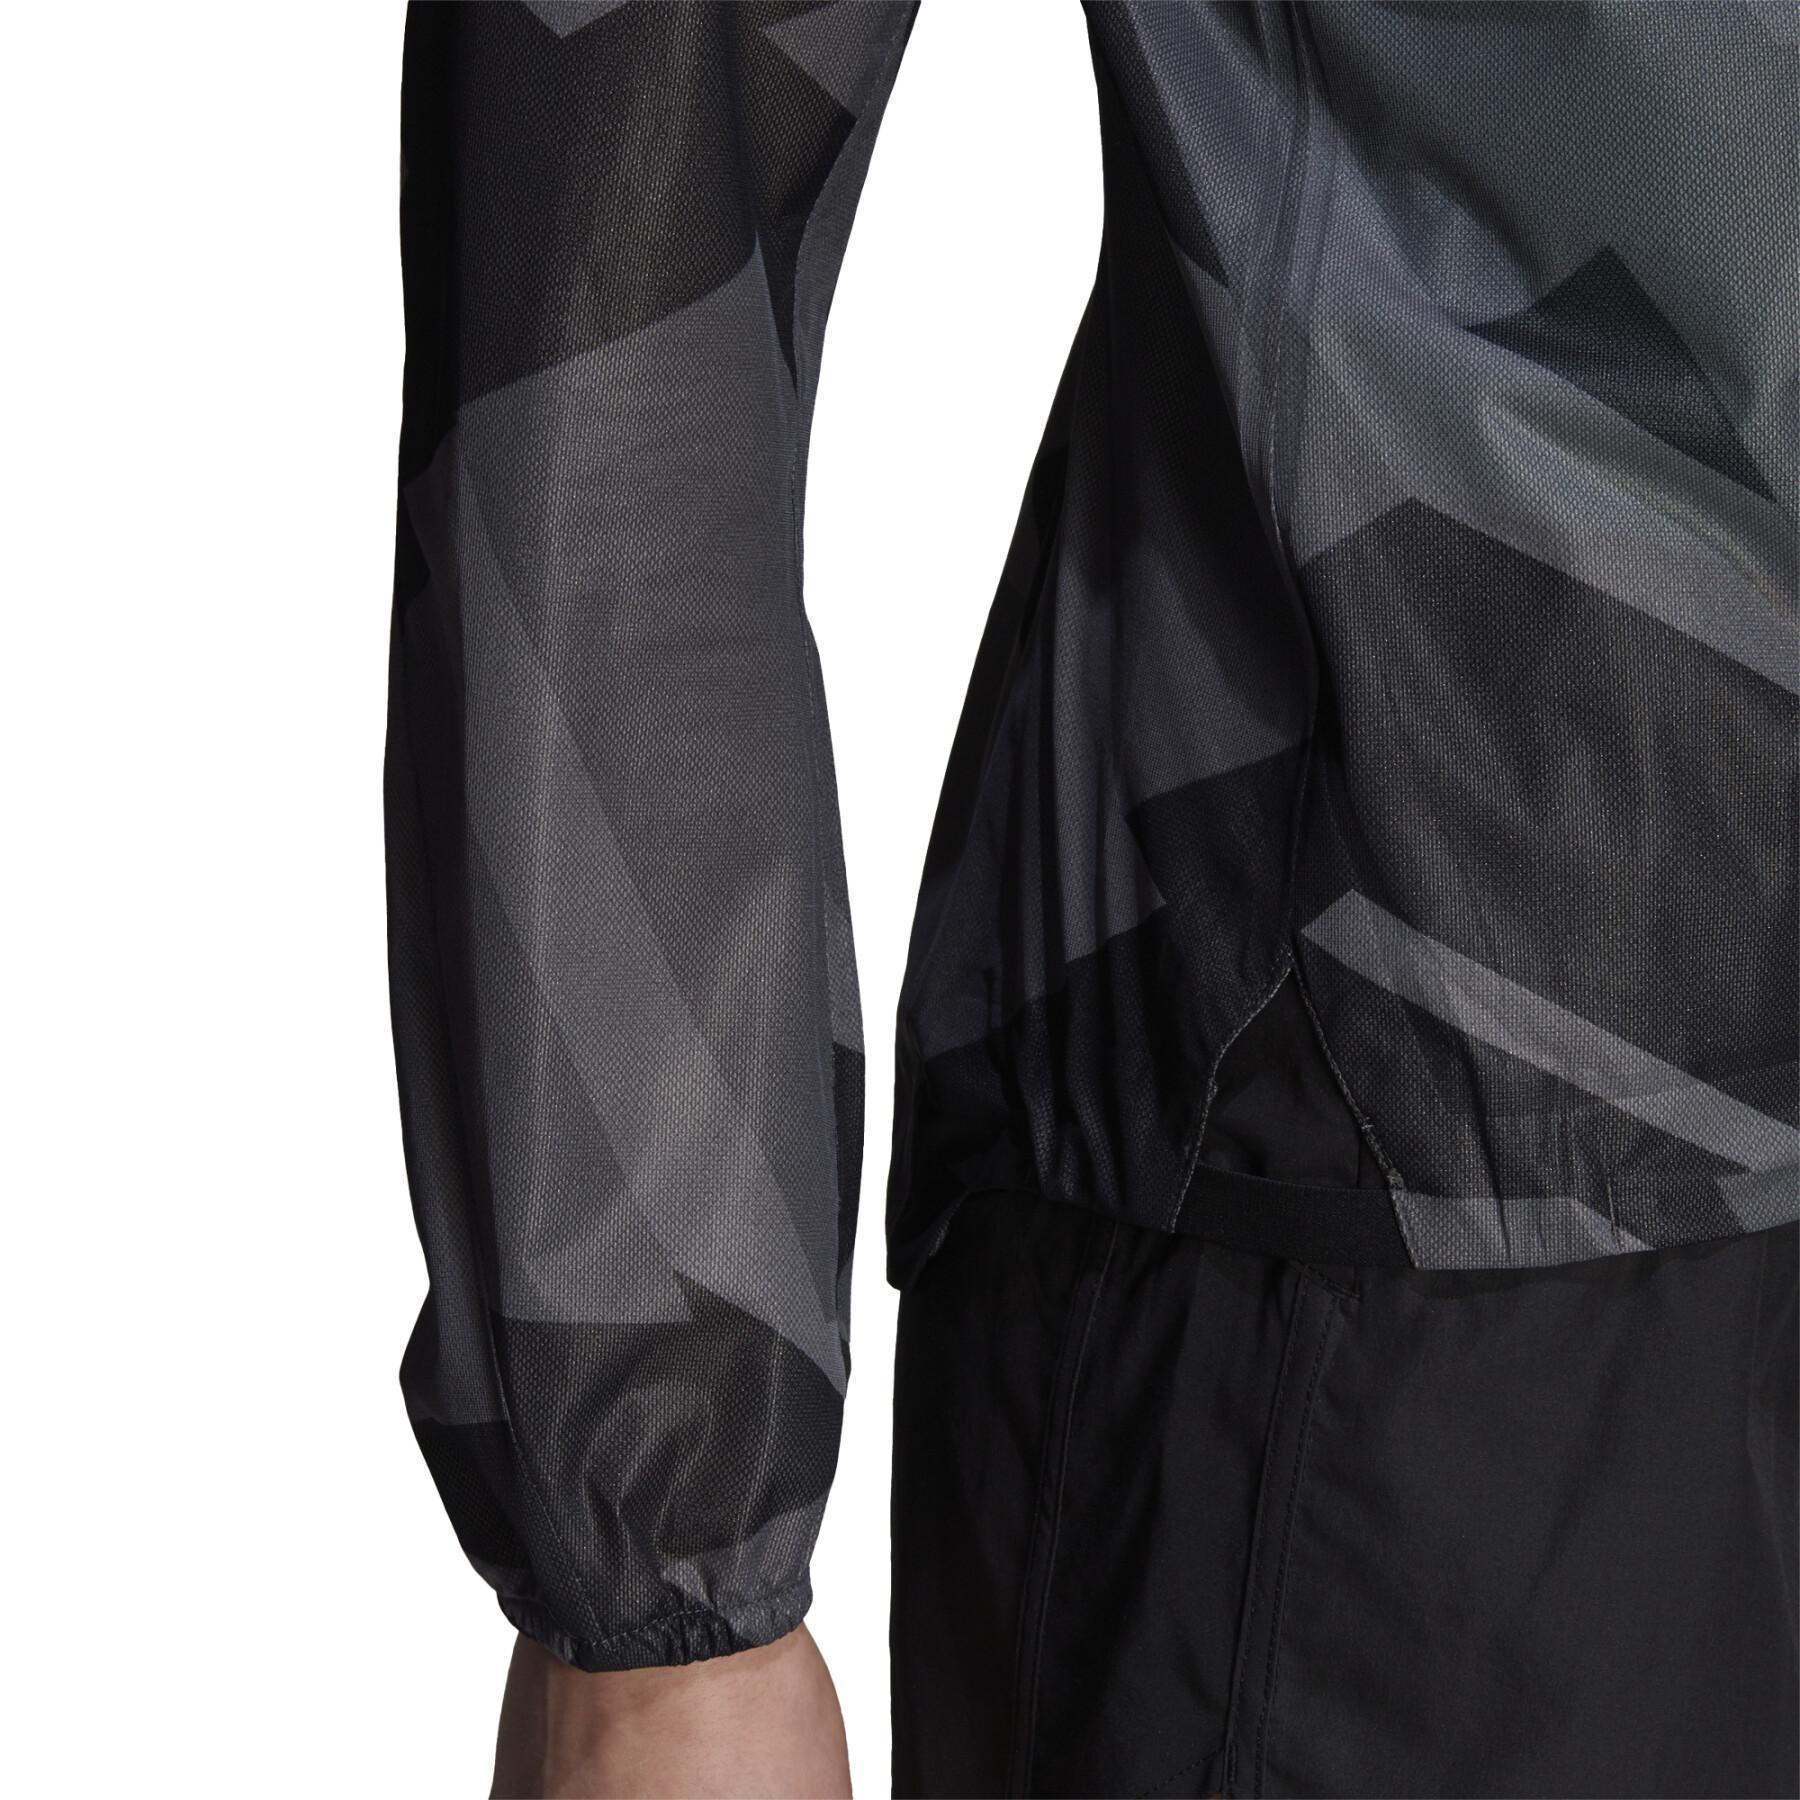 Damska kurtka przeciwdeszczowa adidas Terrex Agravic Graphic